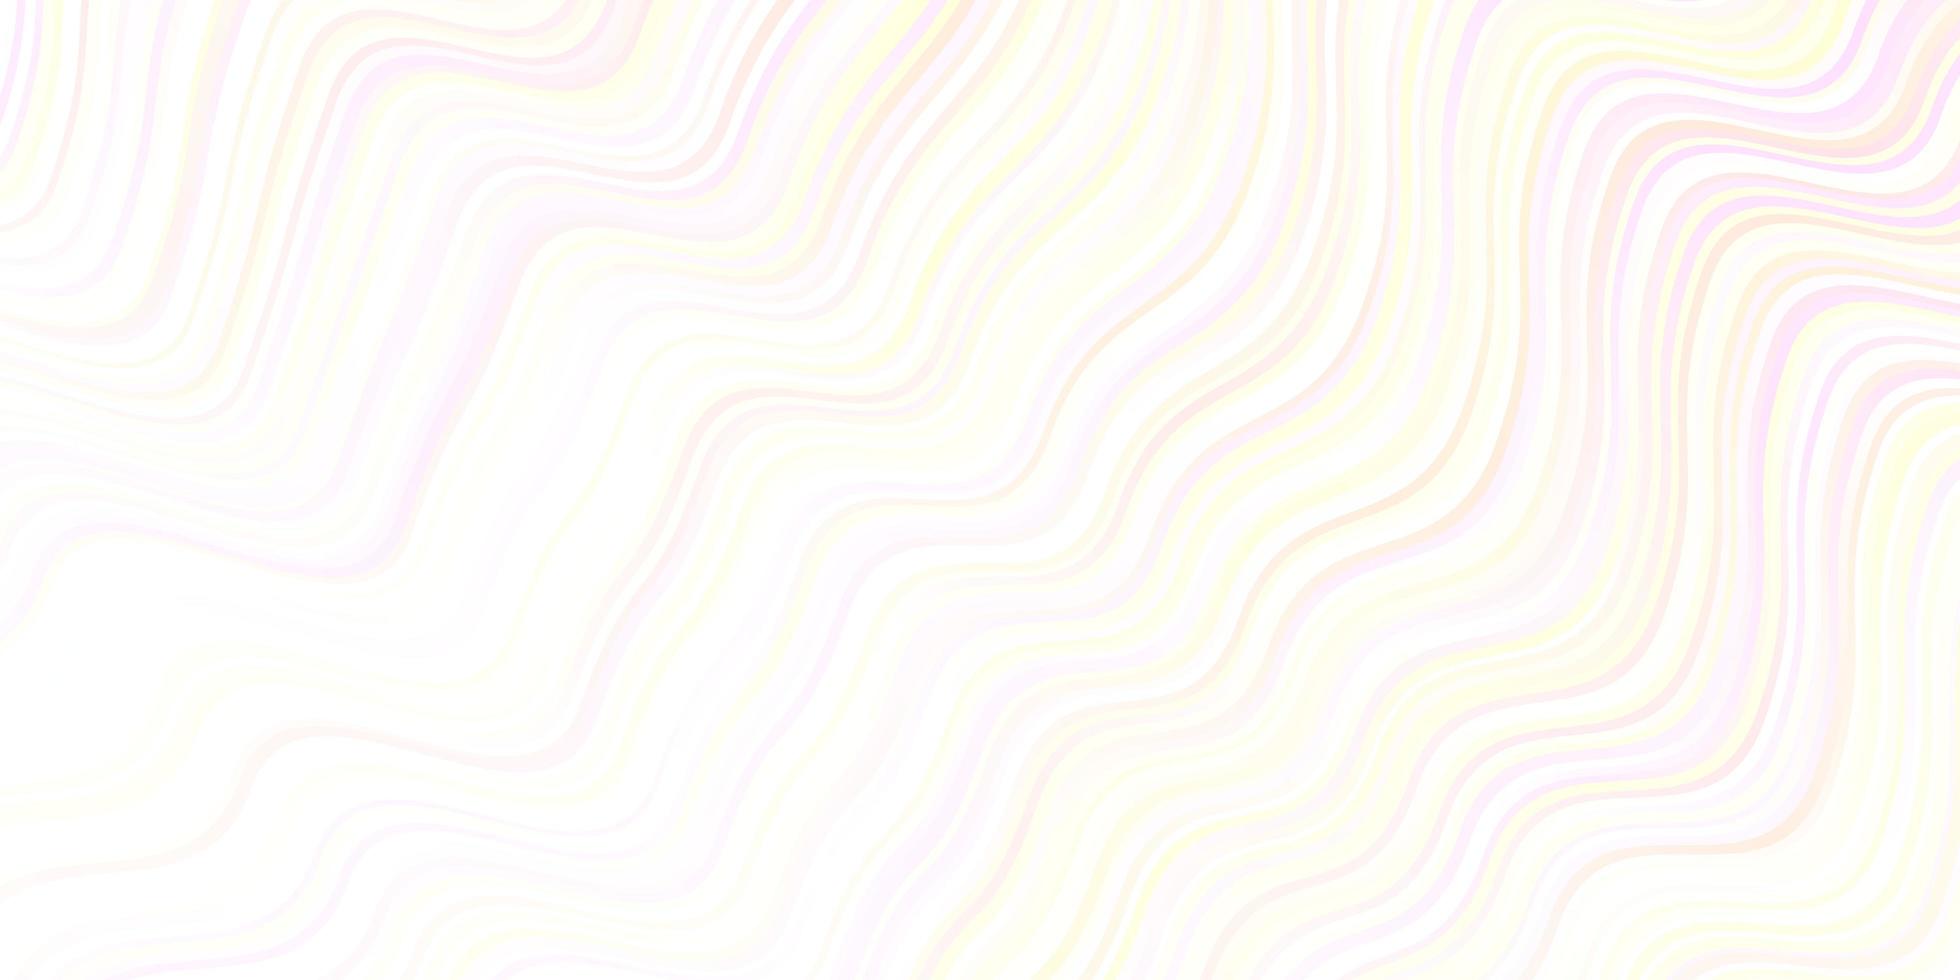 helloranger Vektorhintergrund mit trockenen Linien. vektor